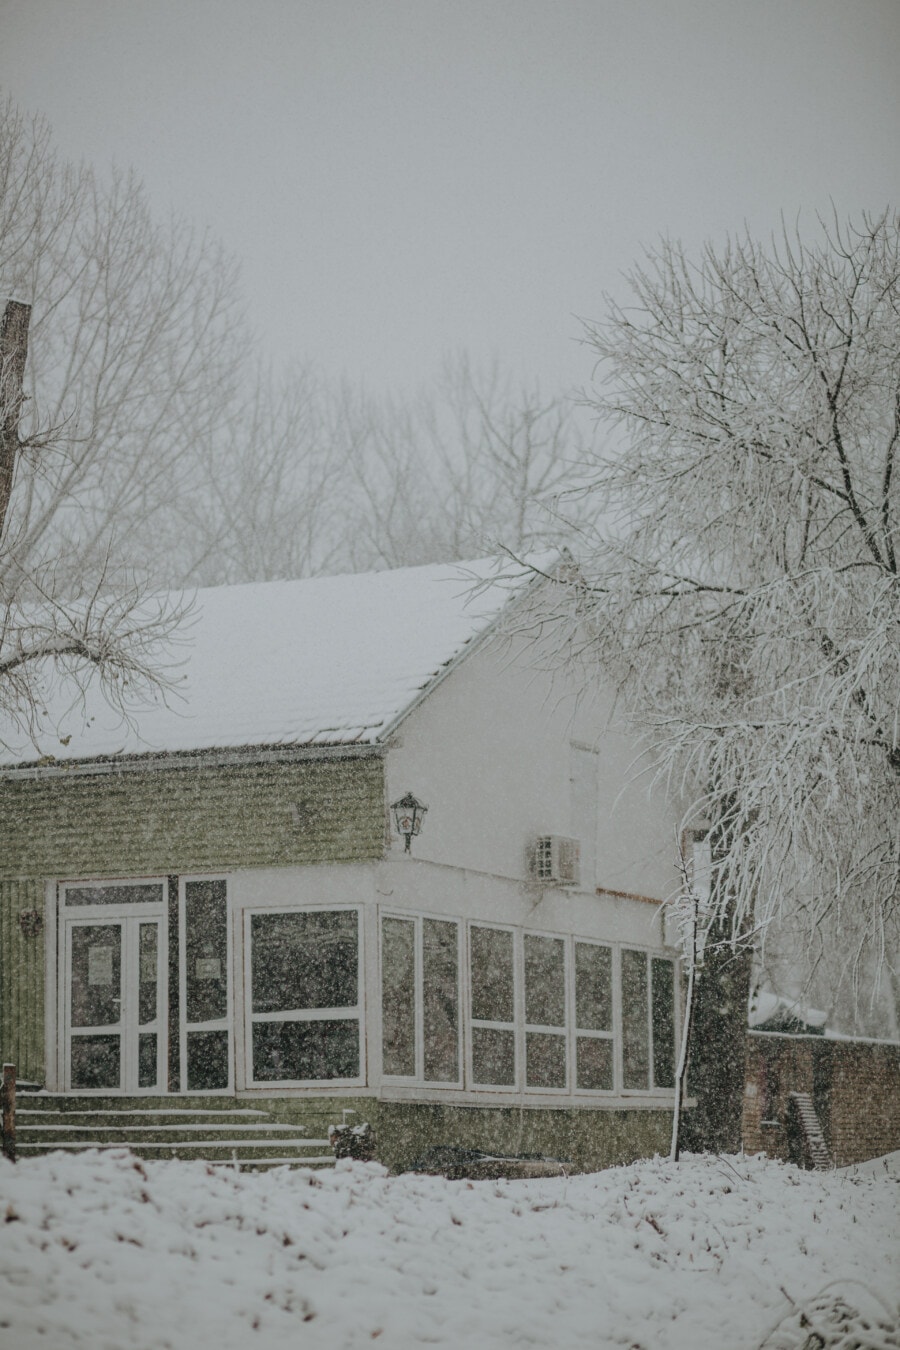 Landschaft, Schnee, Winter, Haus, Schneeflocken, Scheune, Gebäude, Kälte, Frost, Struktur